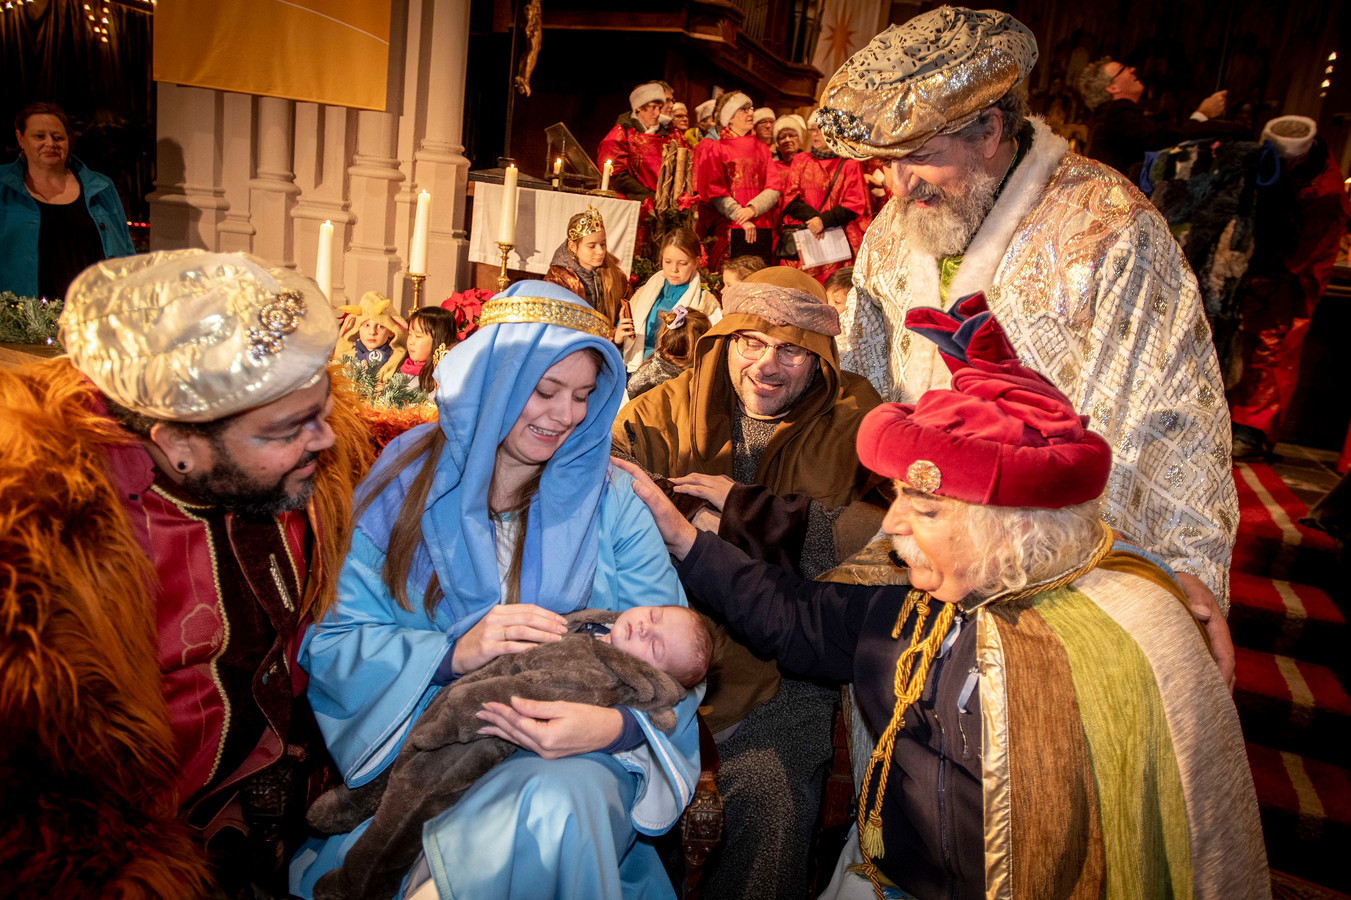 De koningen Caspar (links) en Melchior (tweede van rechts) en Balthazar (rechts) kijken vertederd naar het kindje van Maria en Jozef.